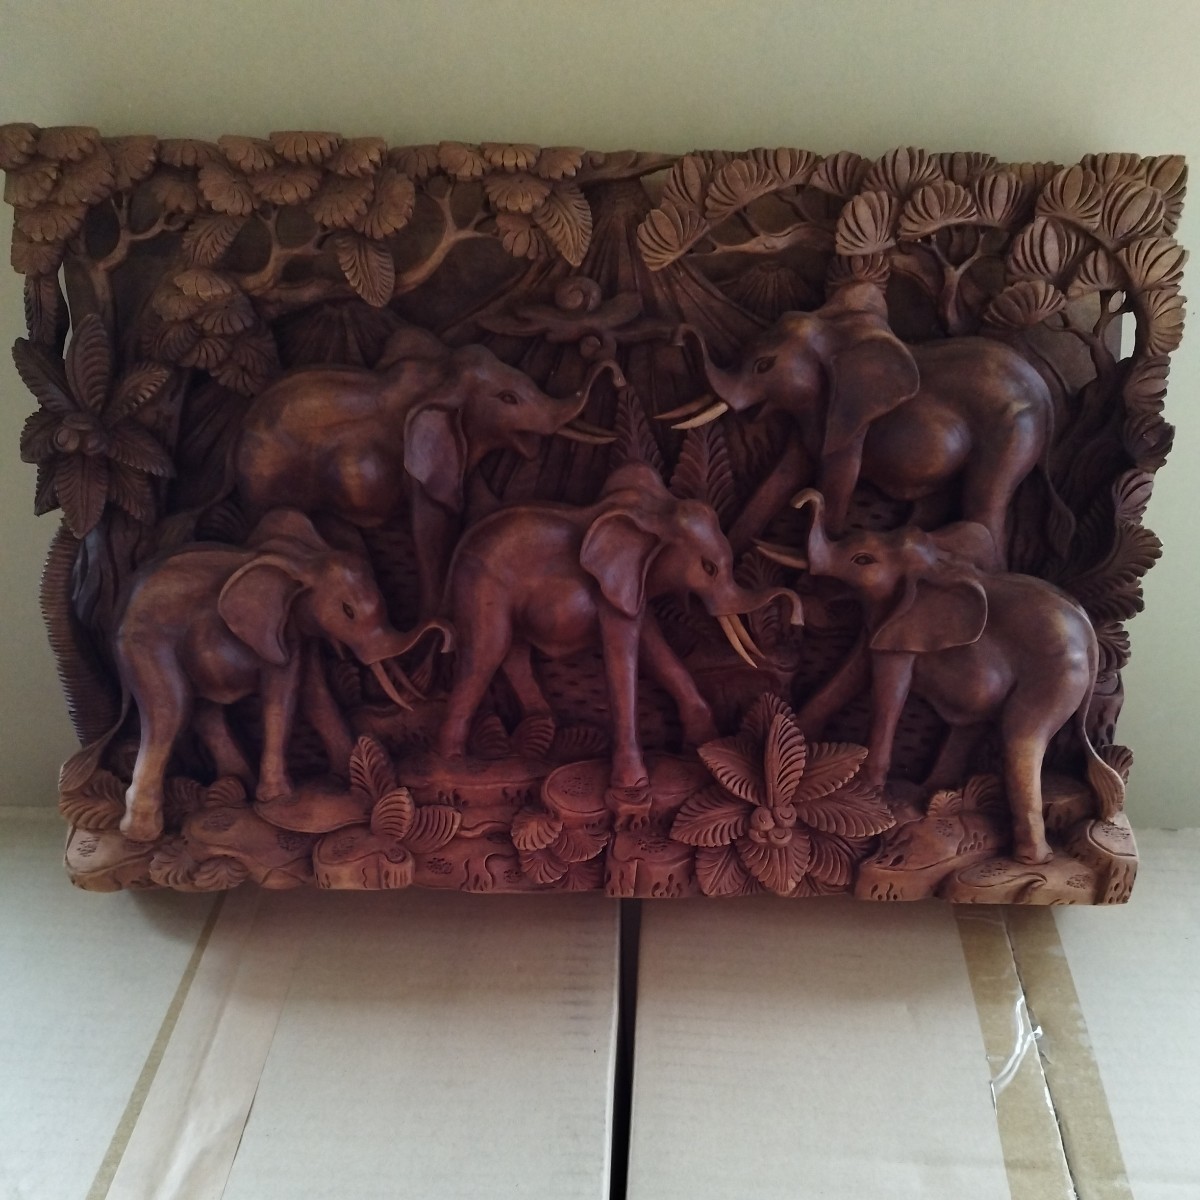 लकड़ी शिल्प, लकड़ी पर नक्काशी, लकड़ी का एक टुकड़ा, राहत नक्काशी, हाथी, बाली से, सेकंड हैंड, शौक, संस्कृति, handcraft, हस्तशिल्प, अन्य